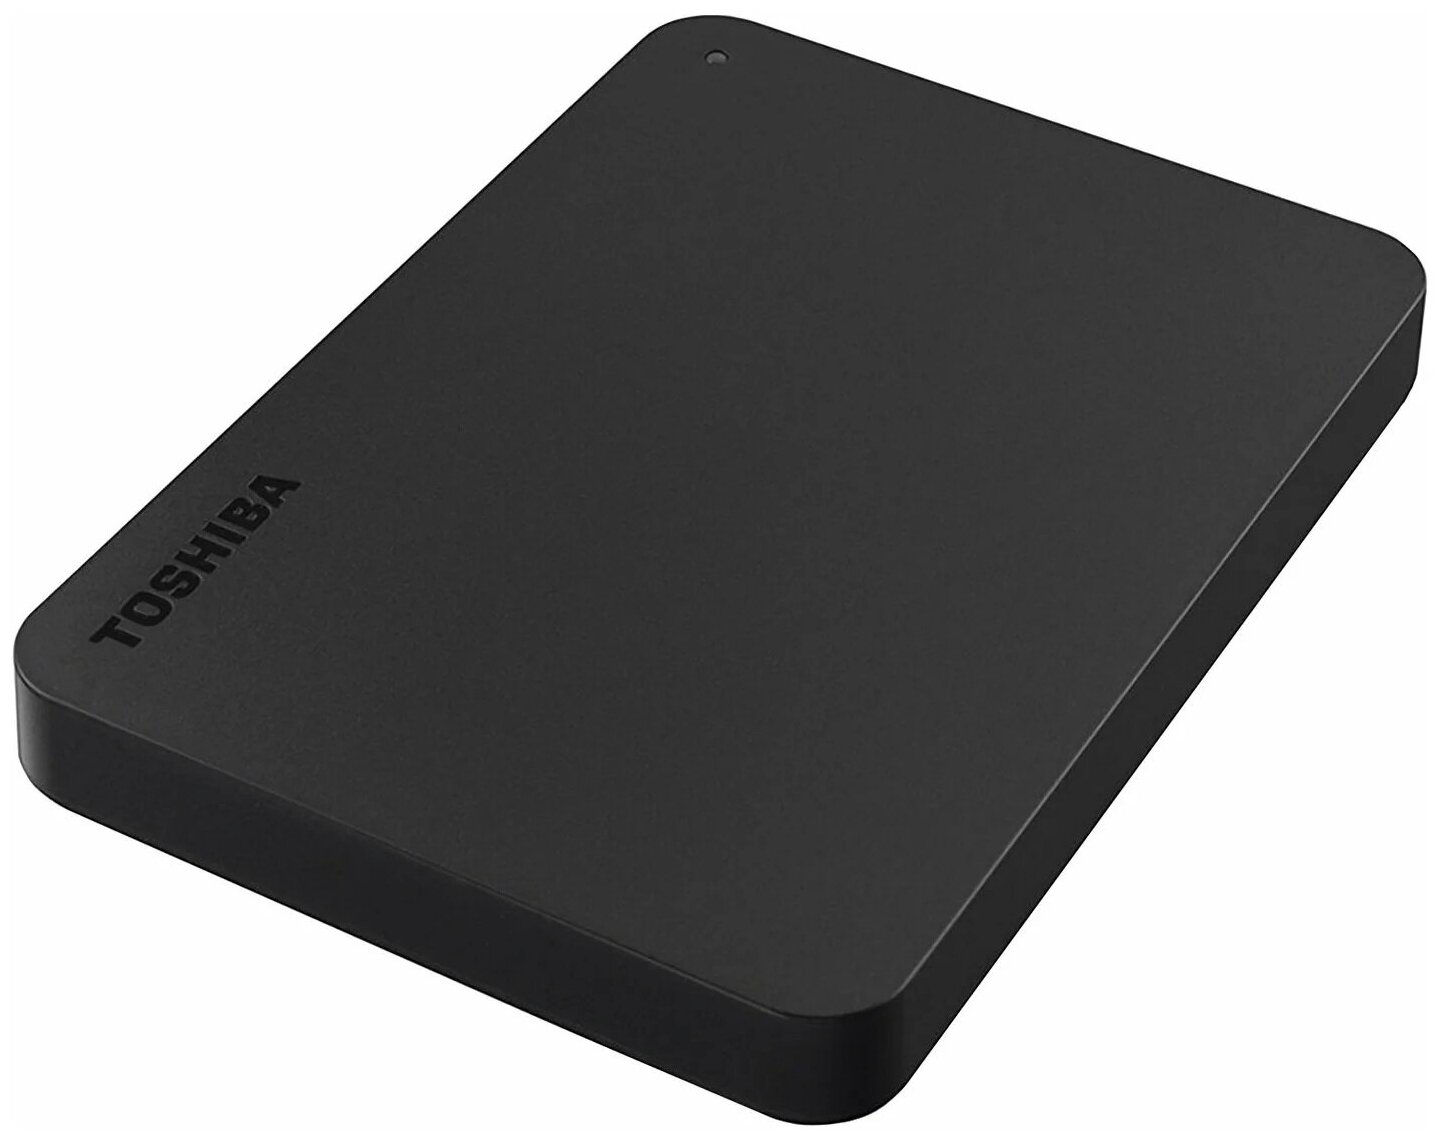 1 ТБ Внешний жесткий диск Canvio Basics (HDTB410EK3AA) черный